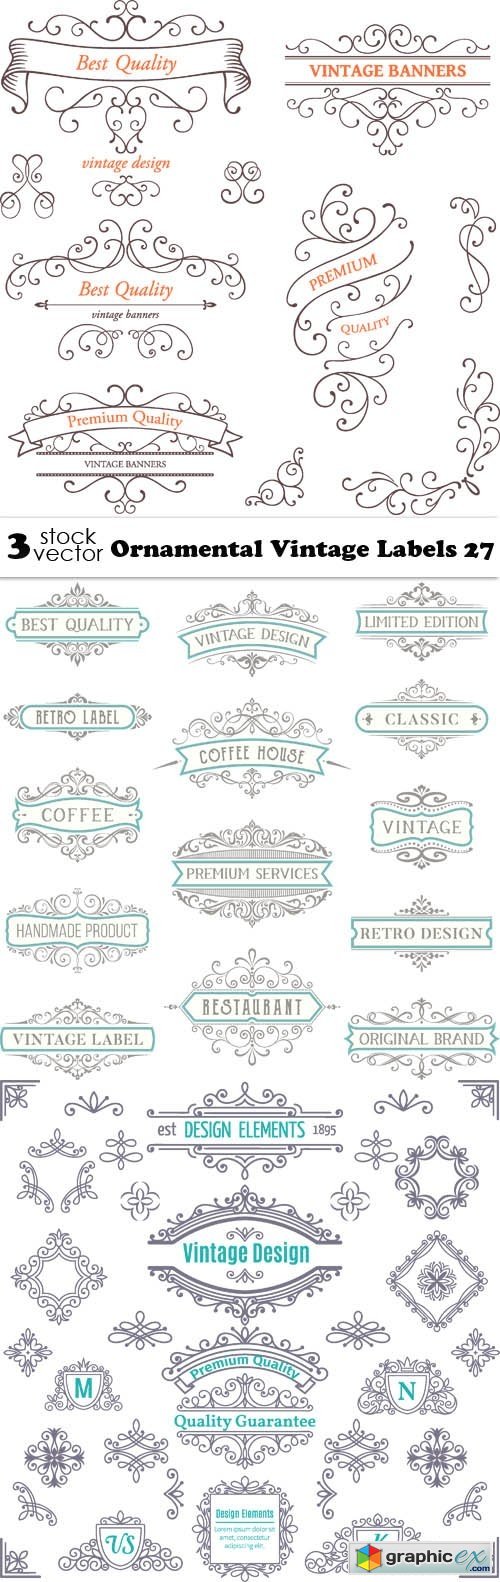 Ornamental Vintage Labels 27